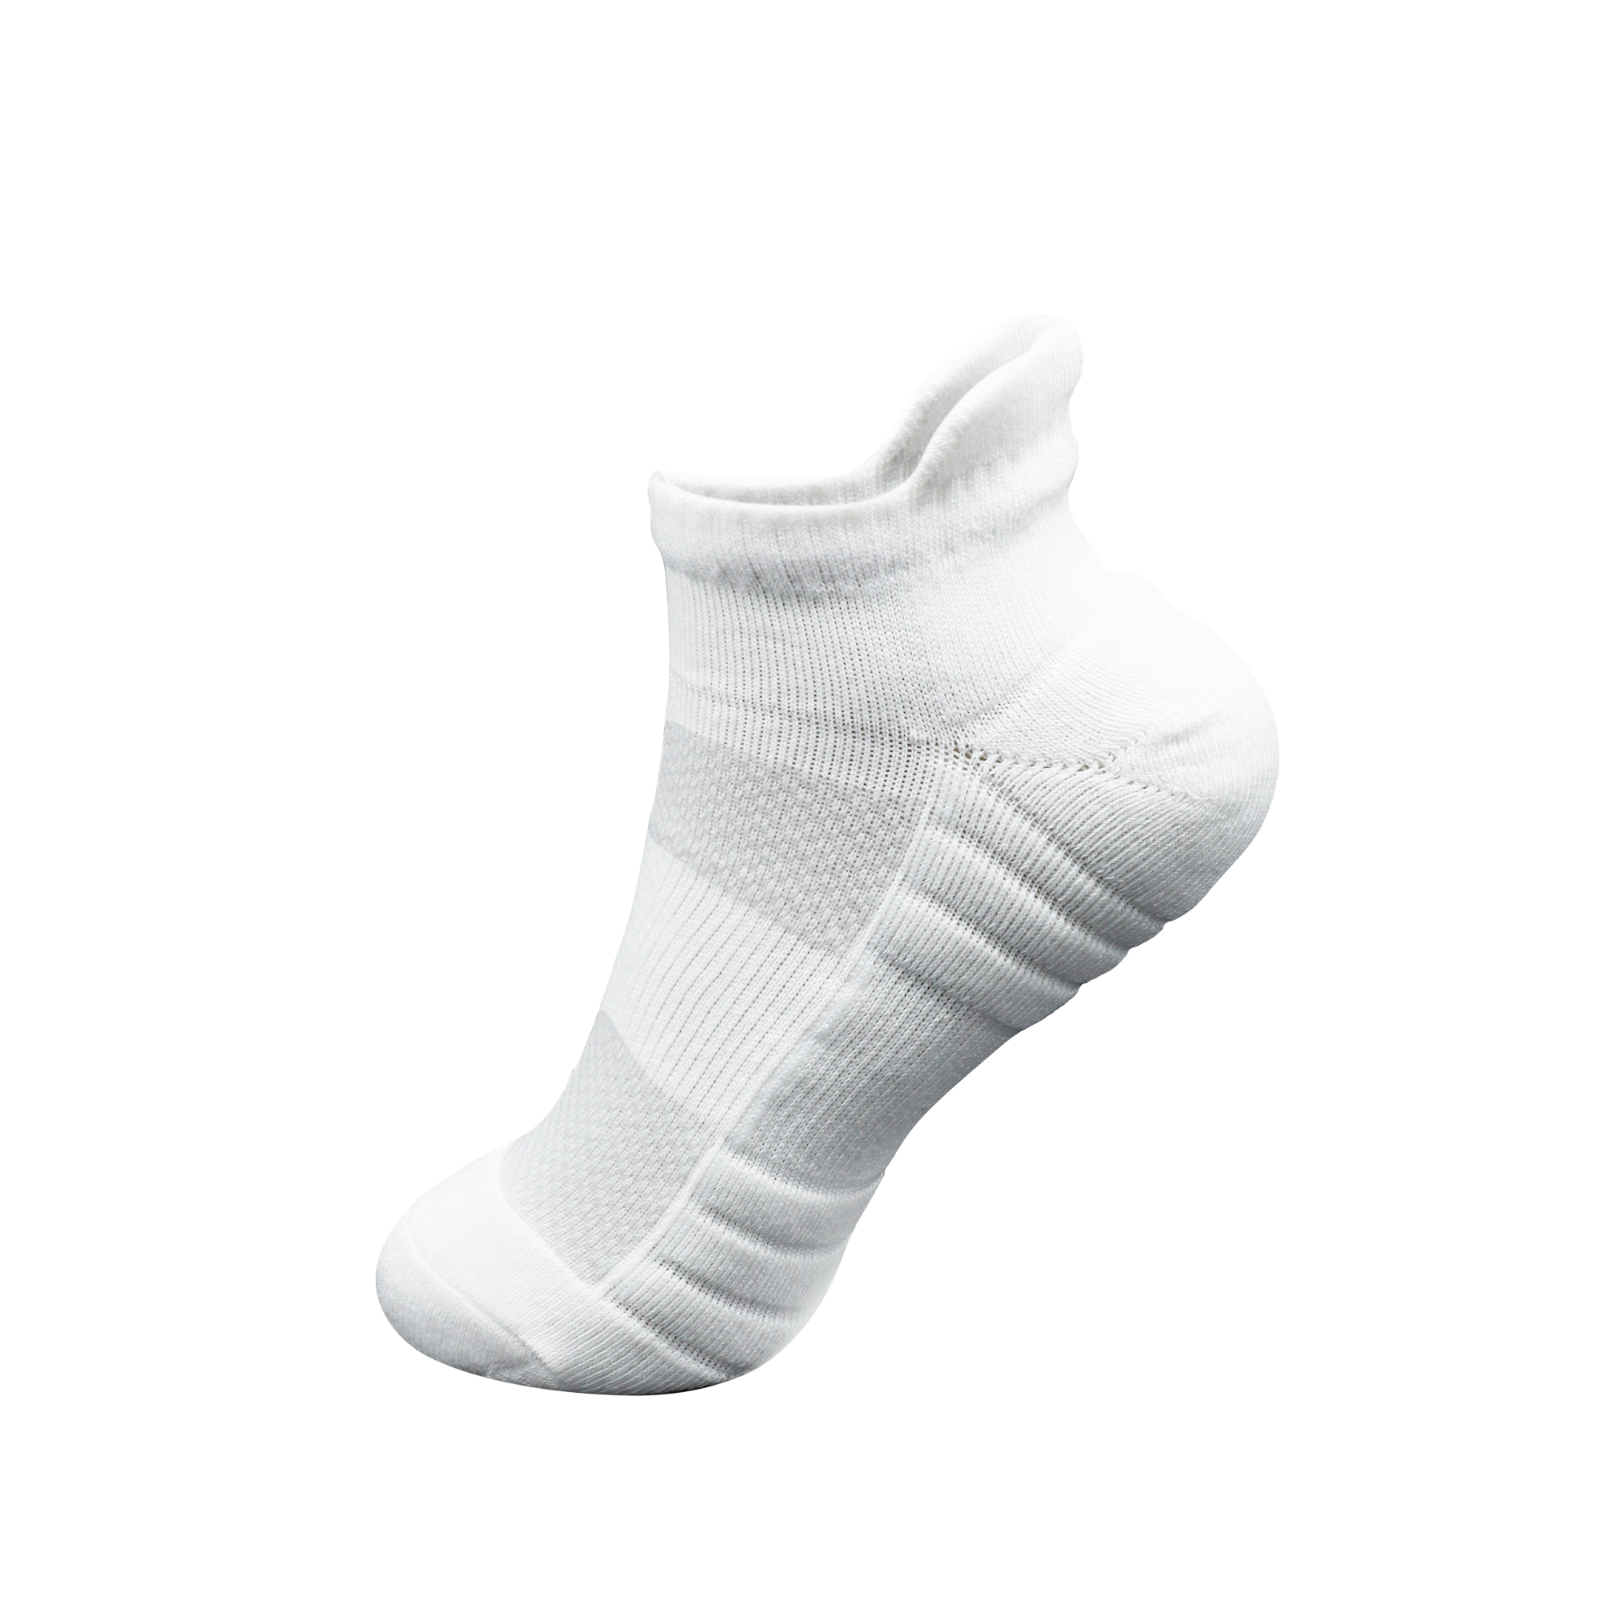 Breathable Trainer sports men Women - Sports Hiking Running Socks white ...